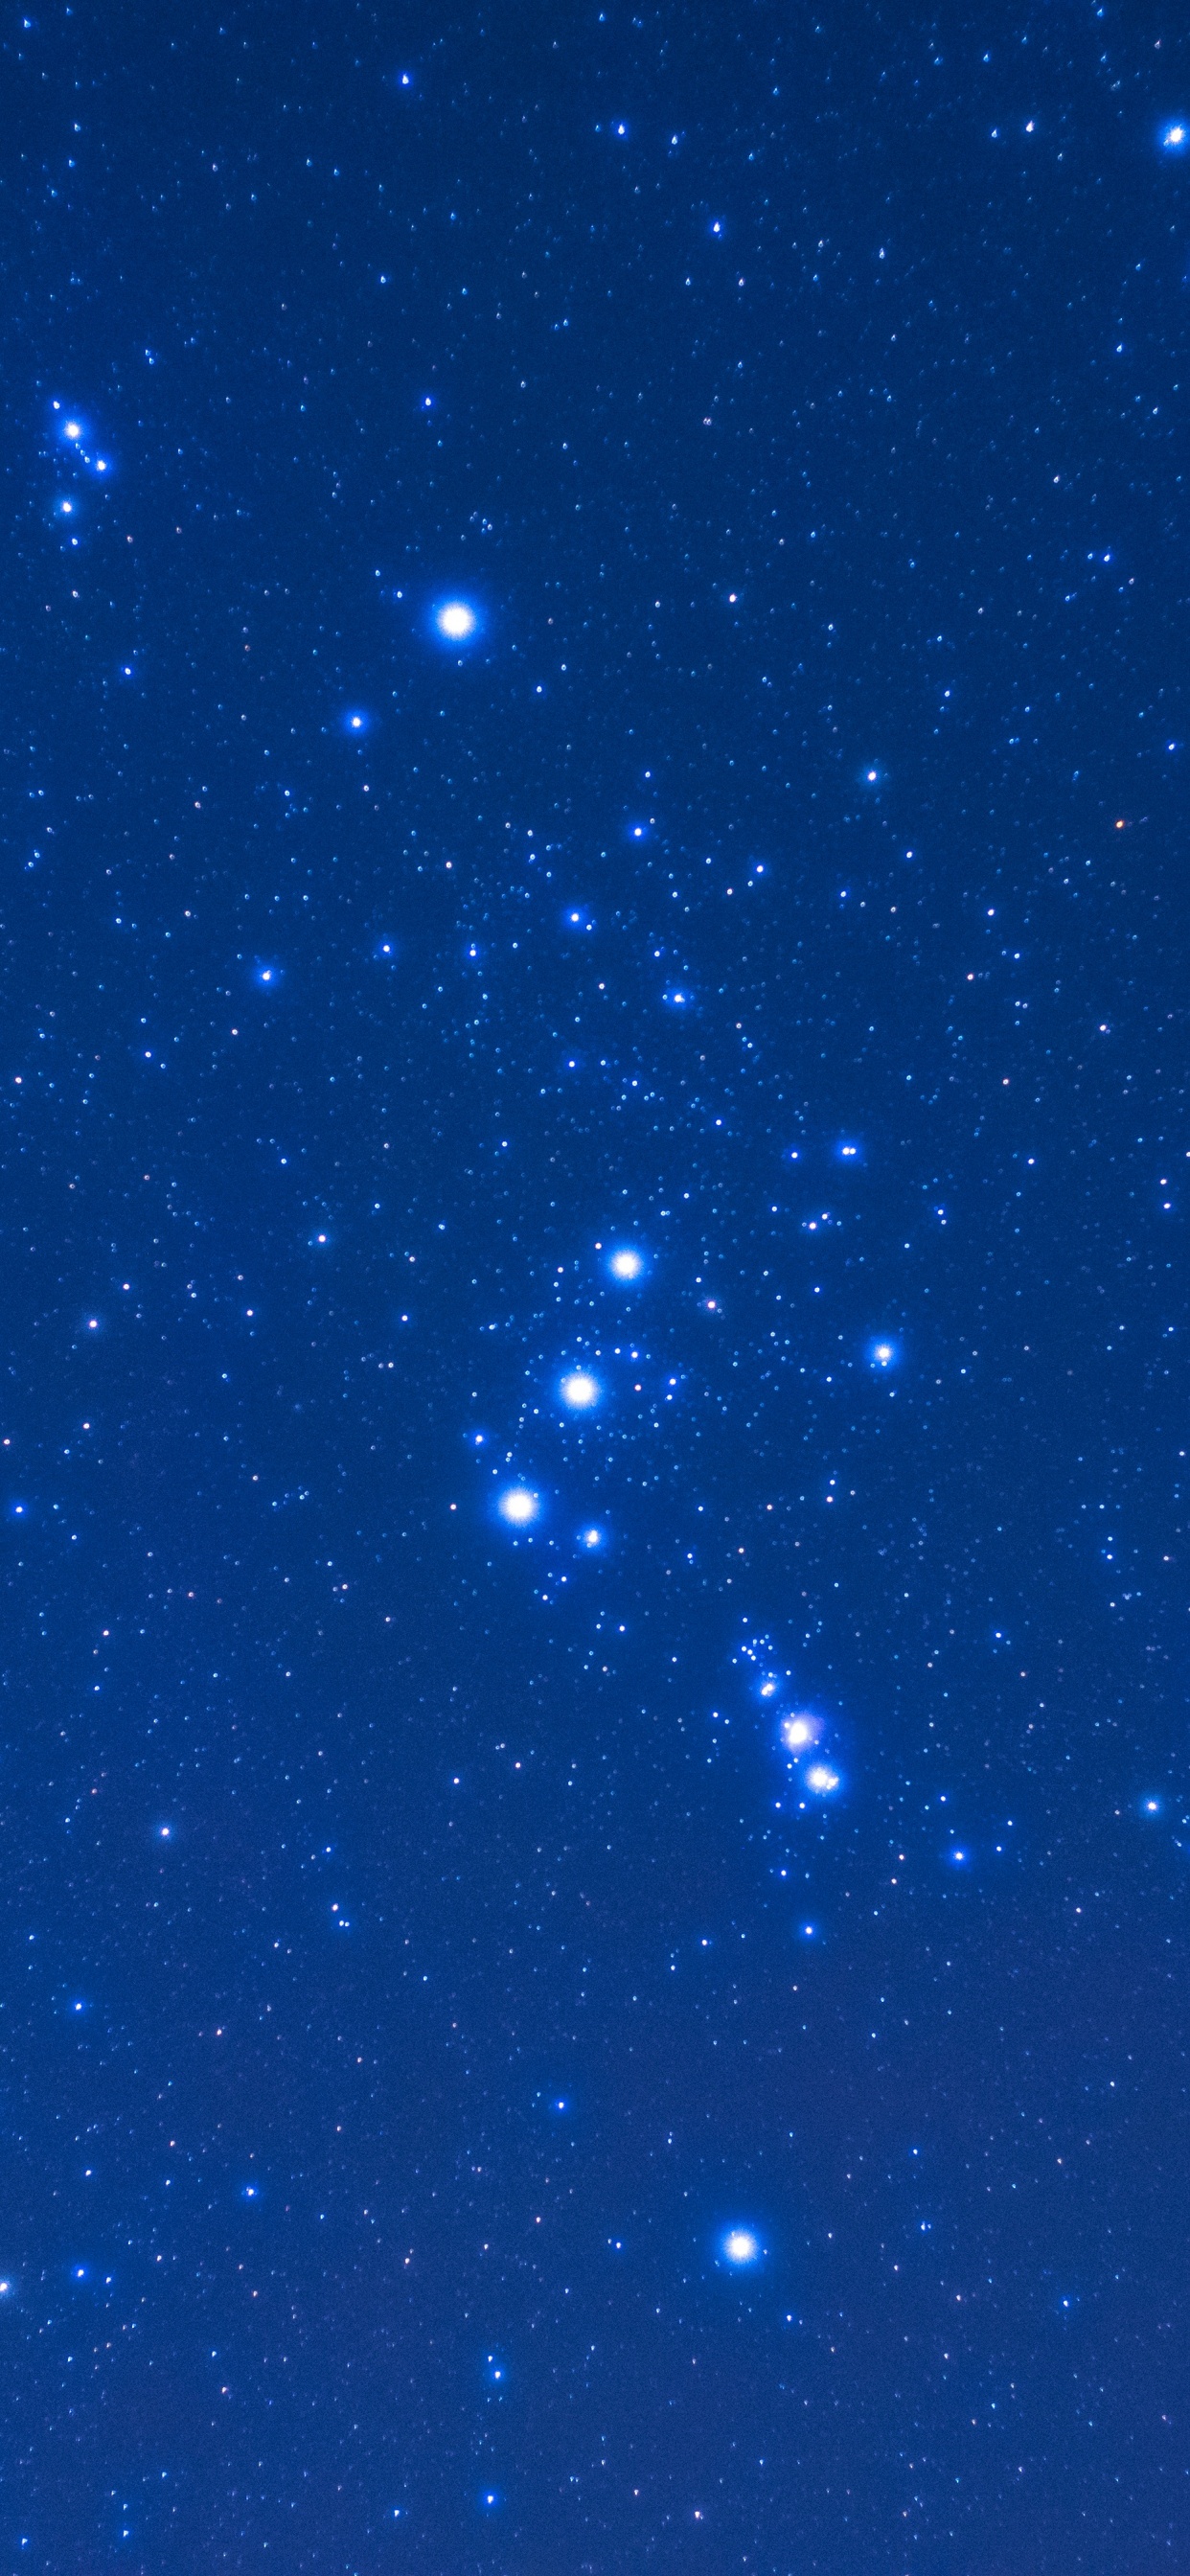 Estrellas Azules y Blancas en el Cielo Azul. Wallpaper in 1242x2688 Resolution